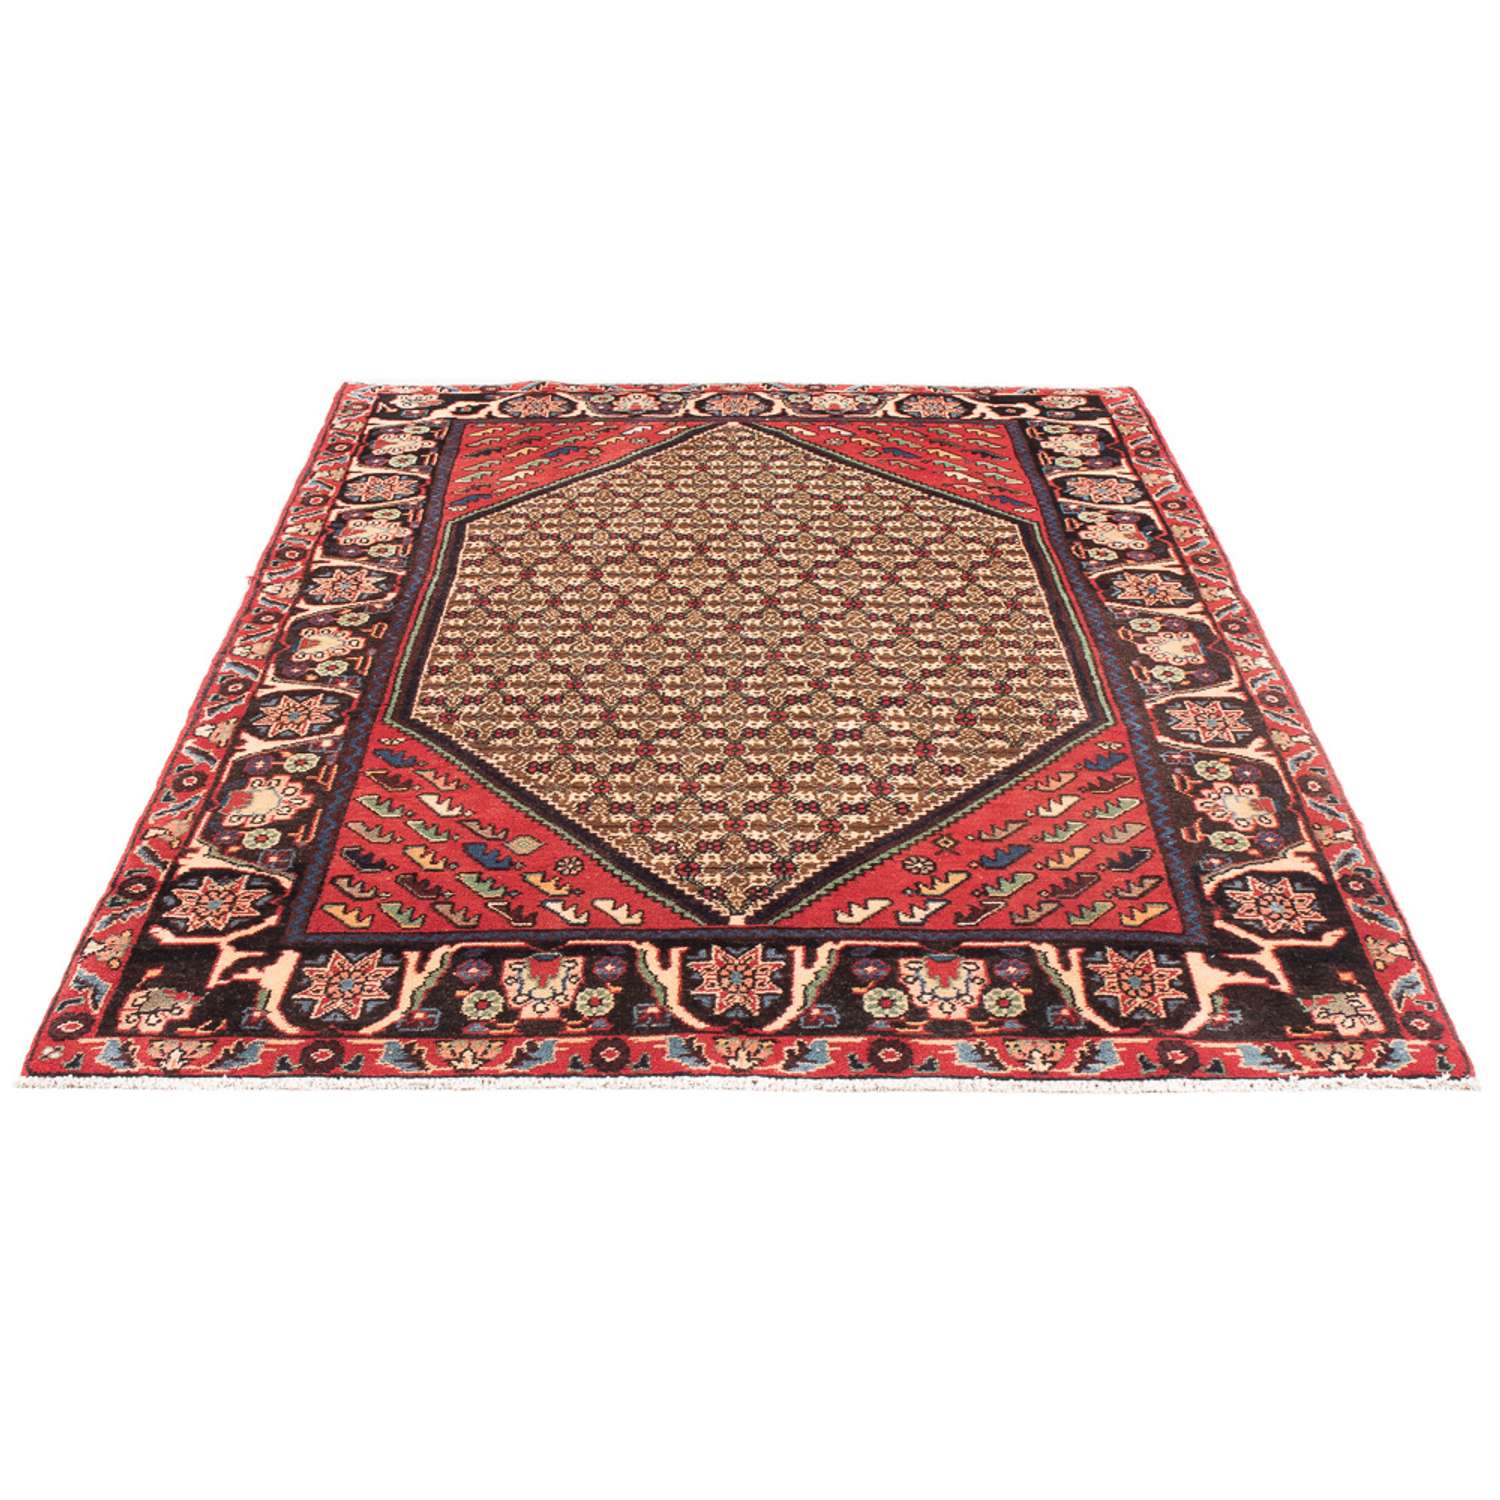 Perski dywan - Nomadyczny - Royal - 197 x 127 cm - kremowy